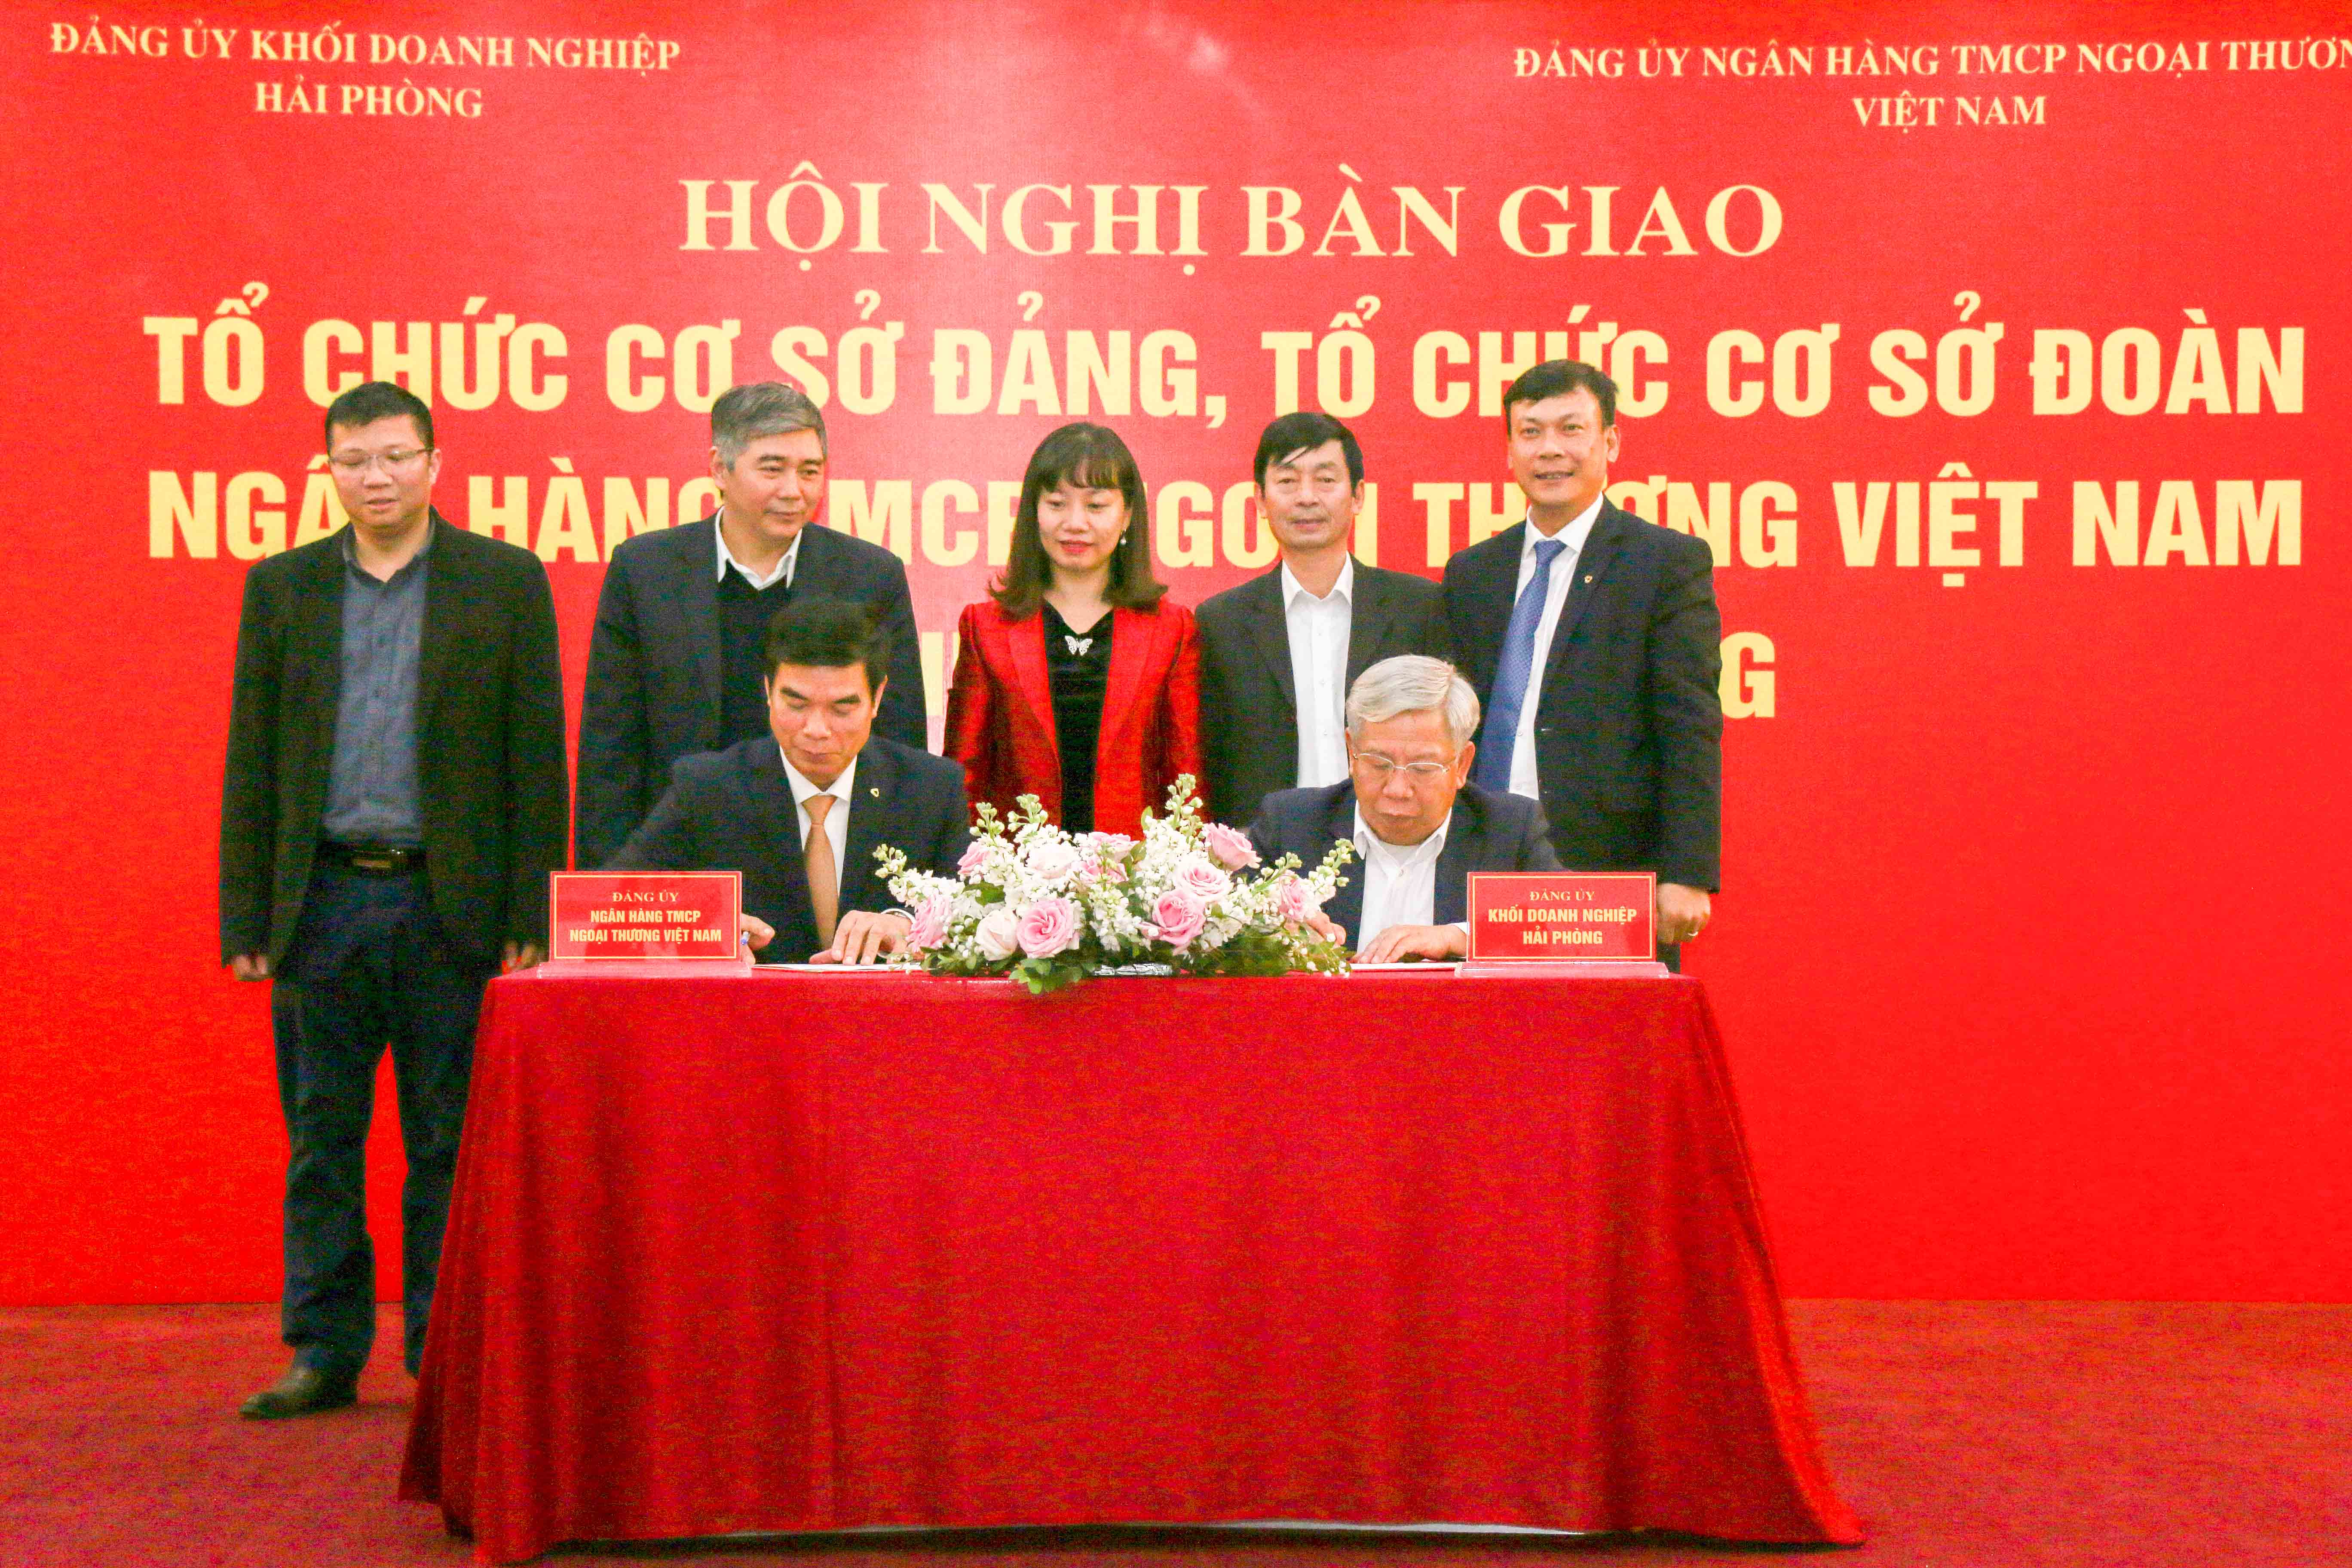 Vietcombank Hải Phòng tổ chức hội nghị bàn giao, tiếp nhận tổ chức cơ sở Đảng và tổ chức cơ sở Đoàn 